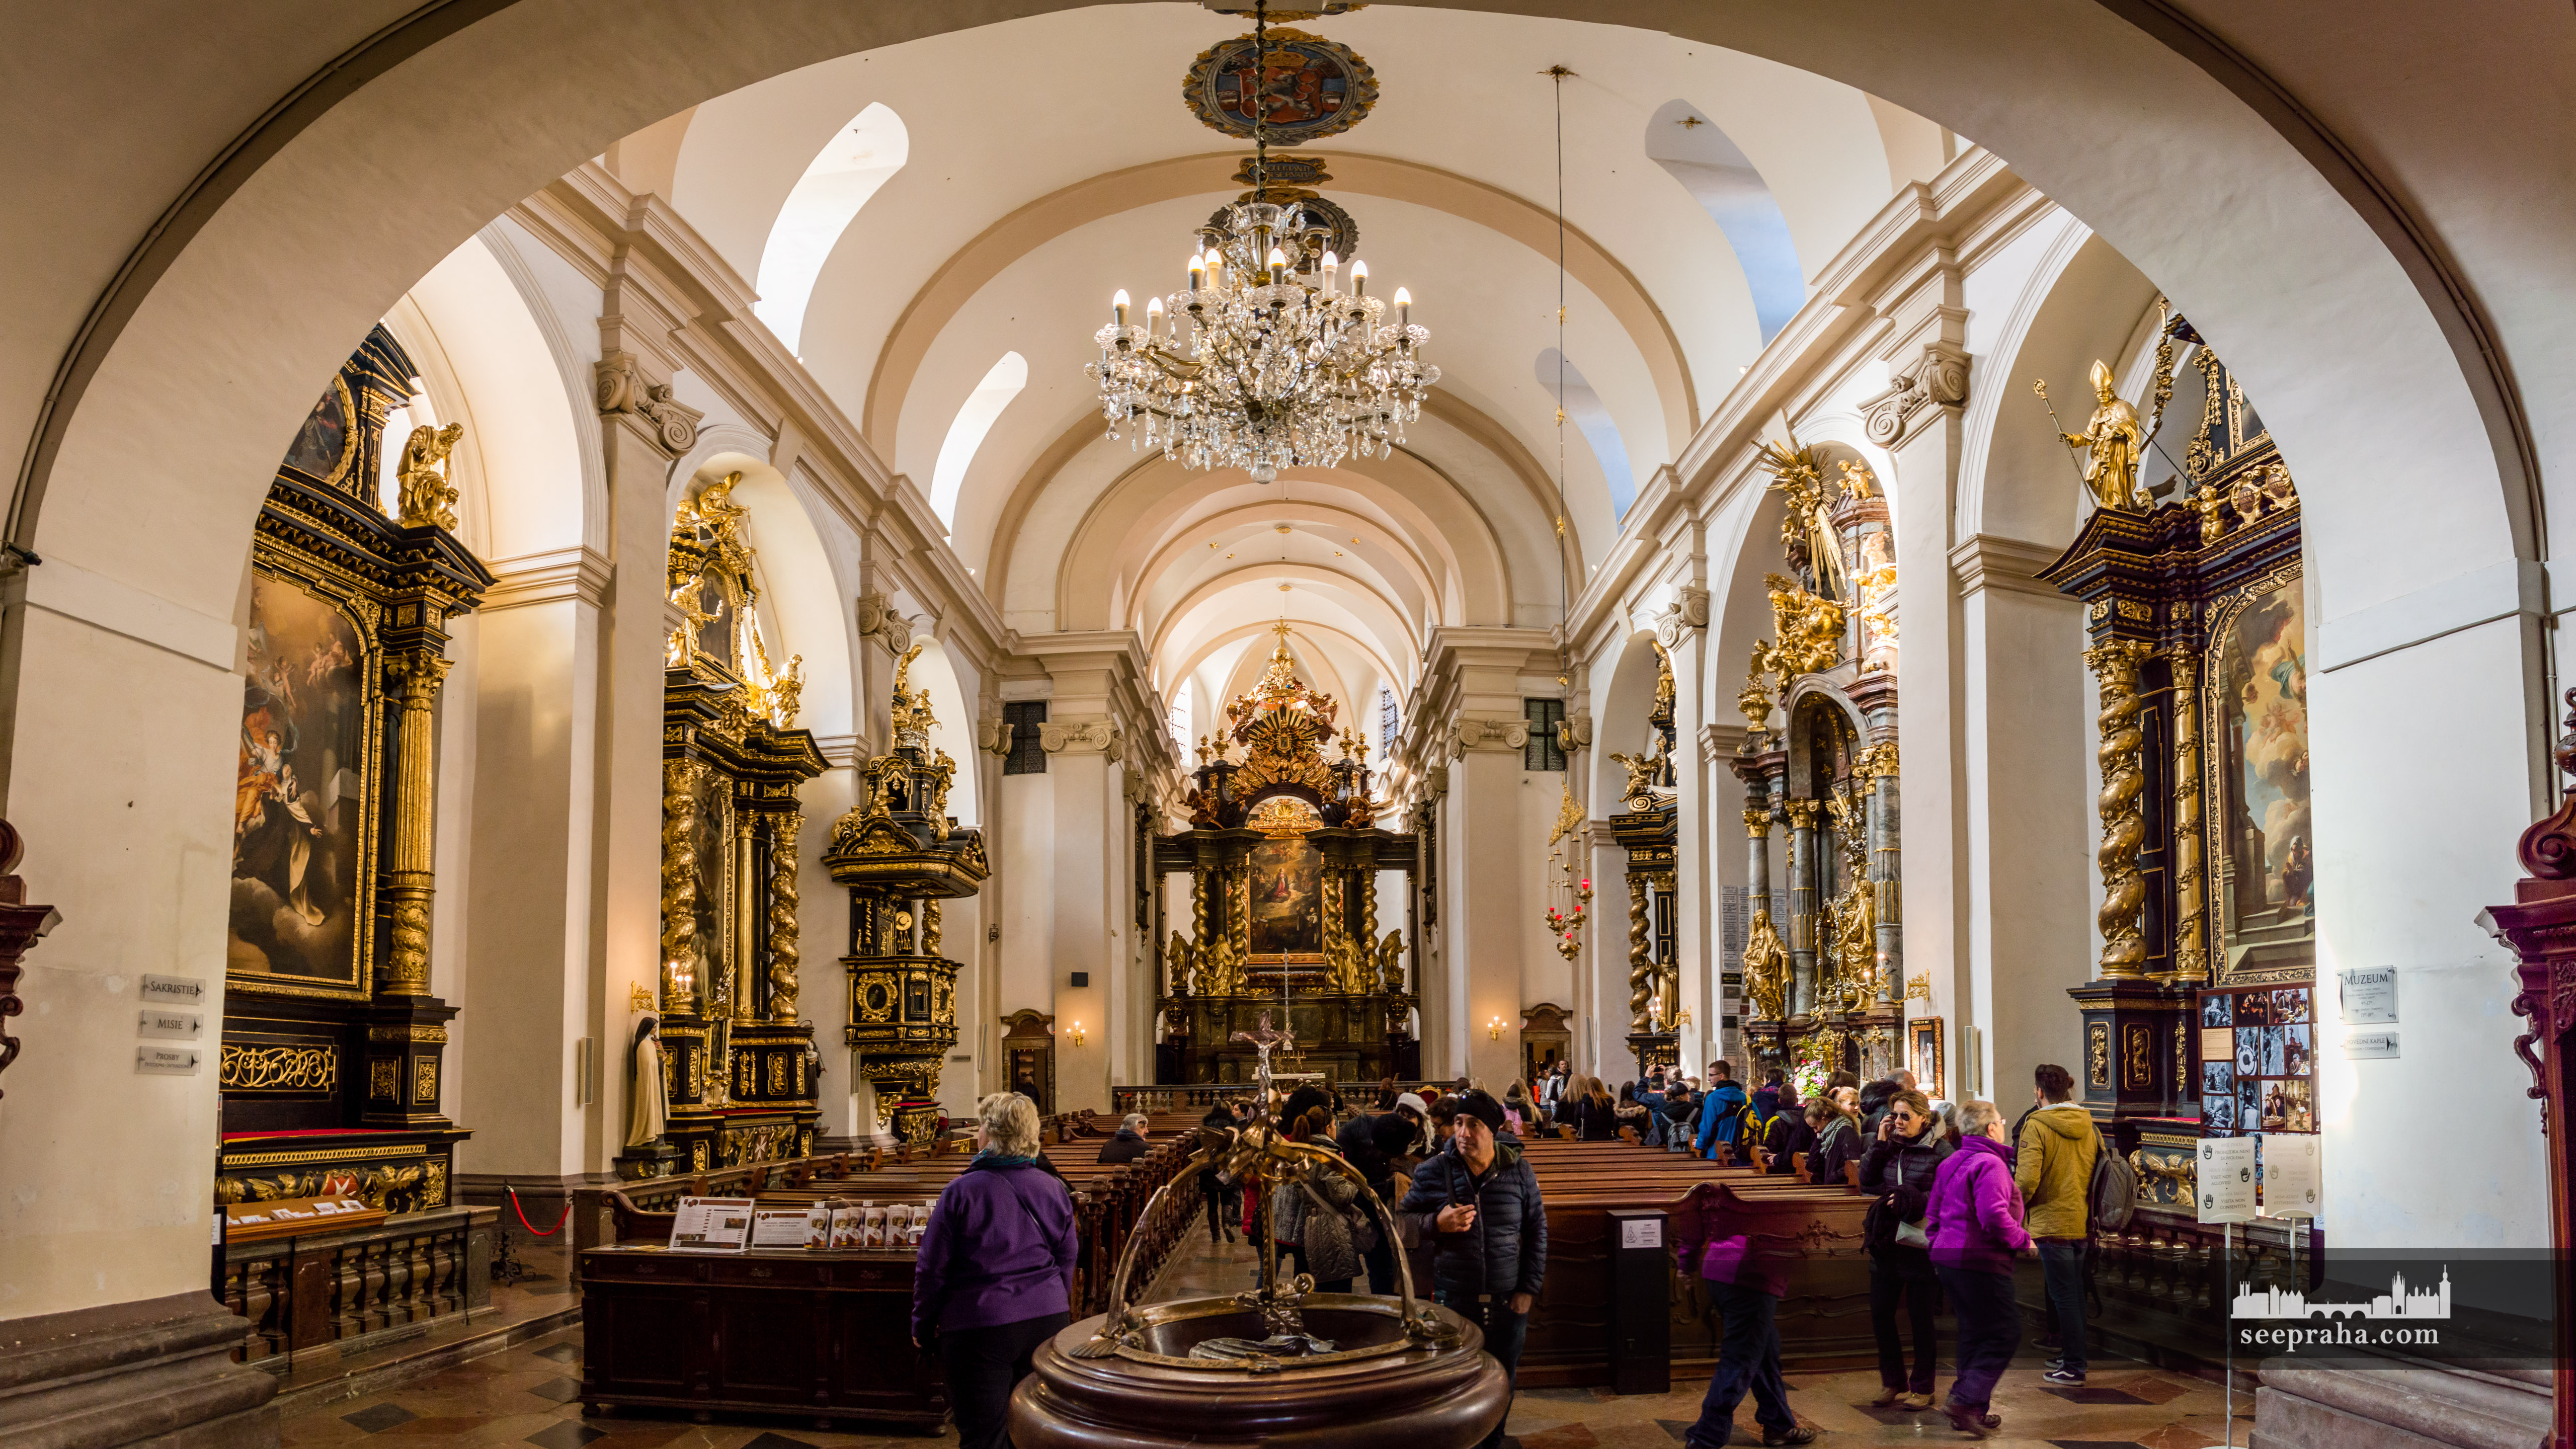 Wnętrze kościoła Panny Marii Zwycięskiej, Praga, Czechy